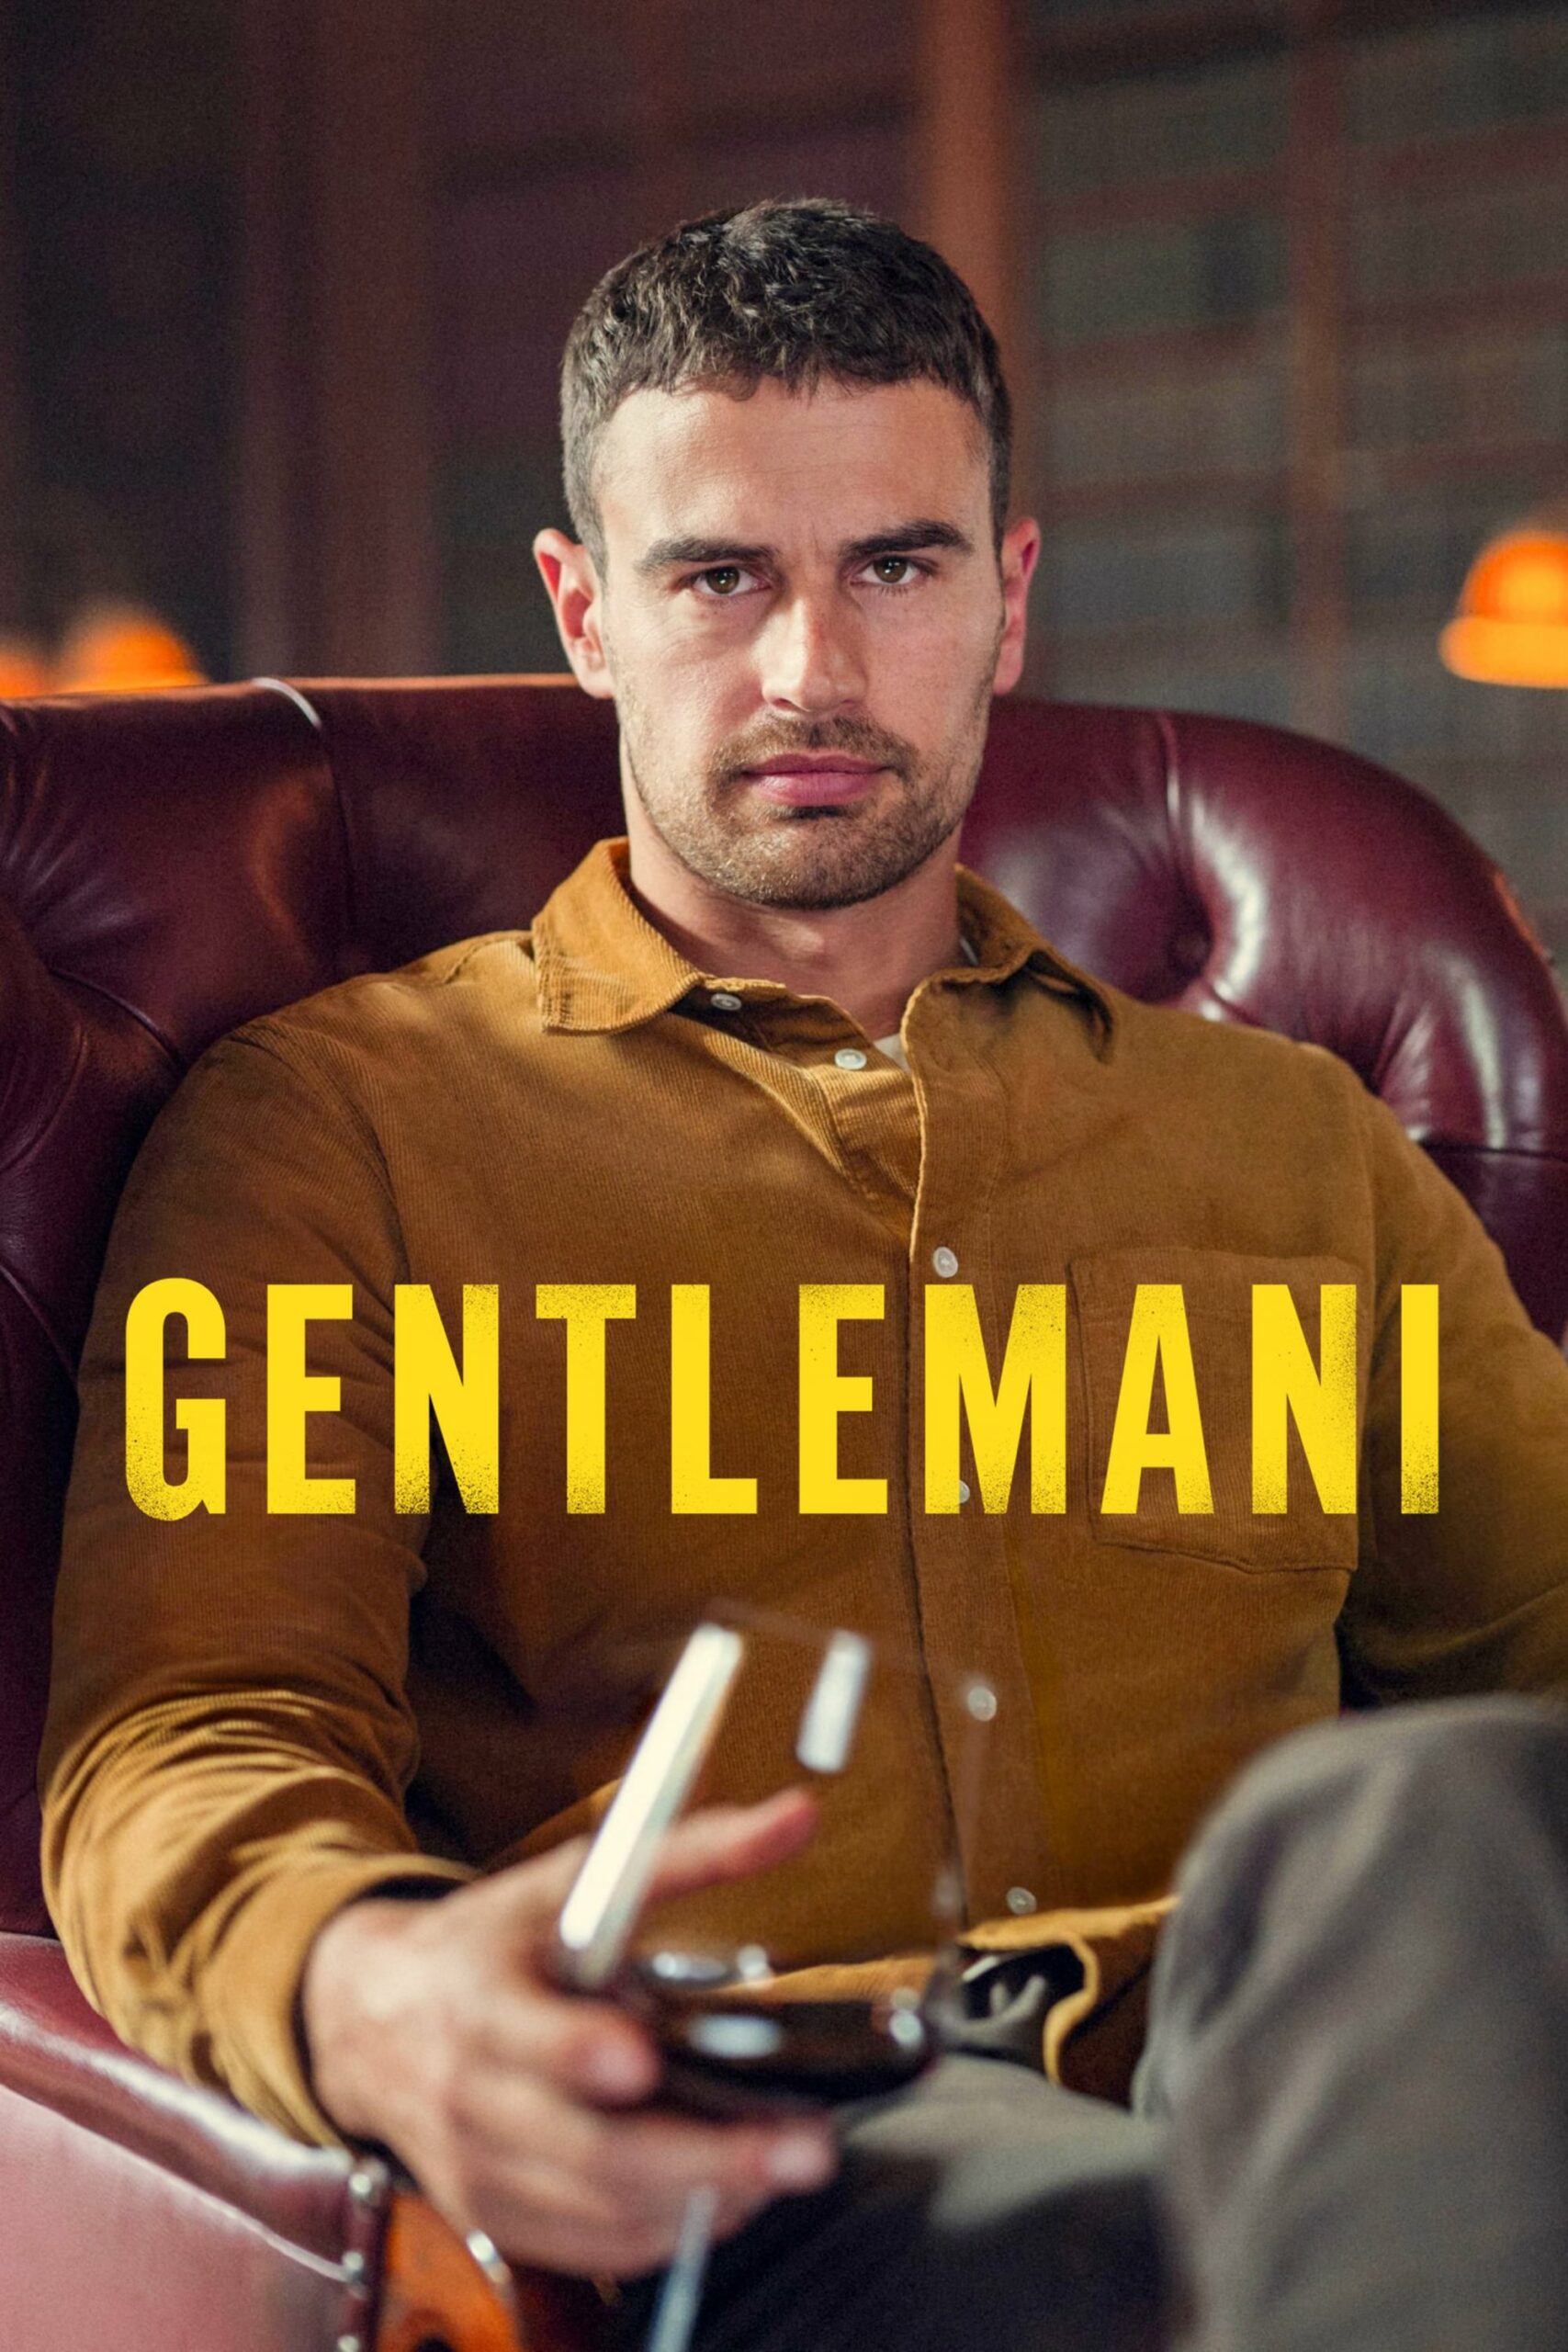 Plakát pro film “Gentlemani”